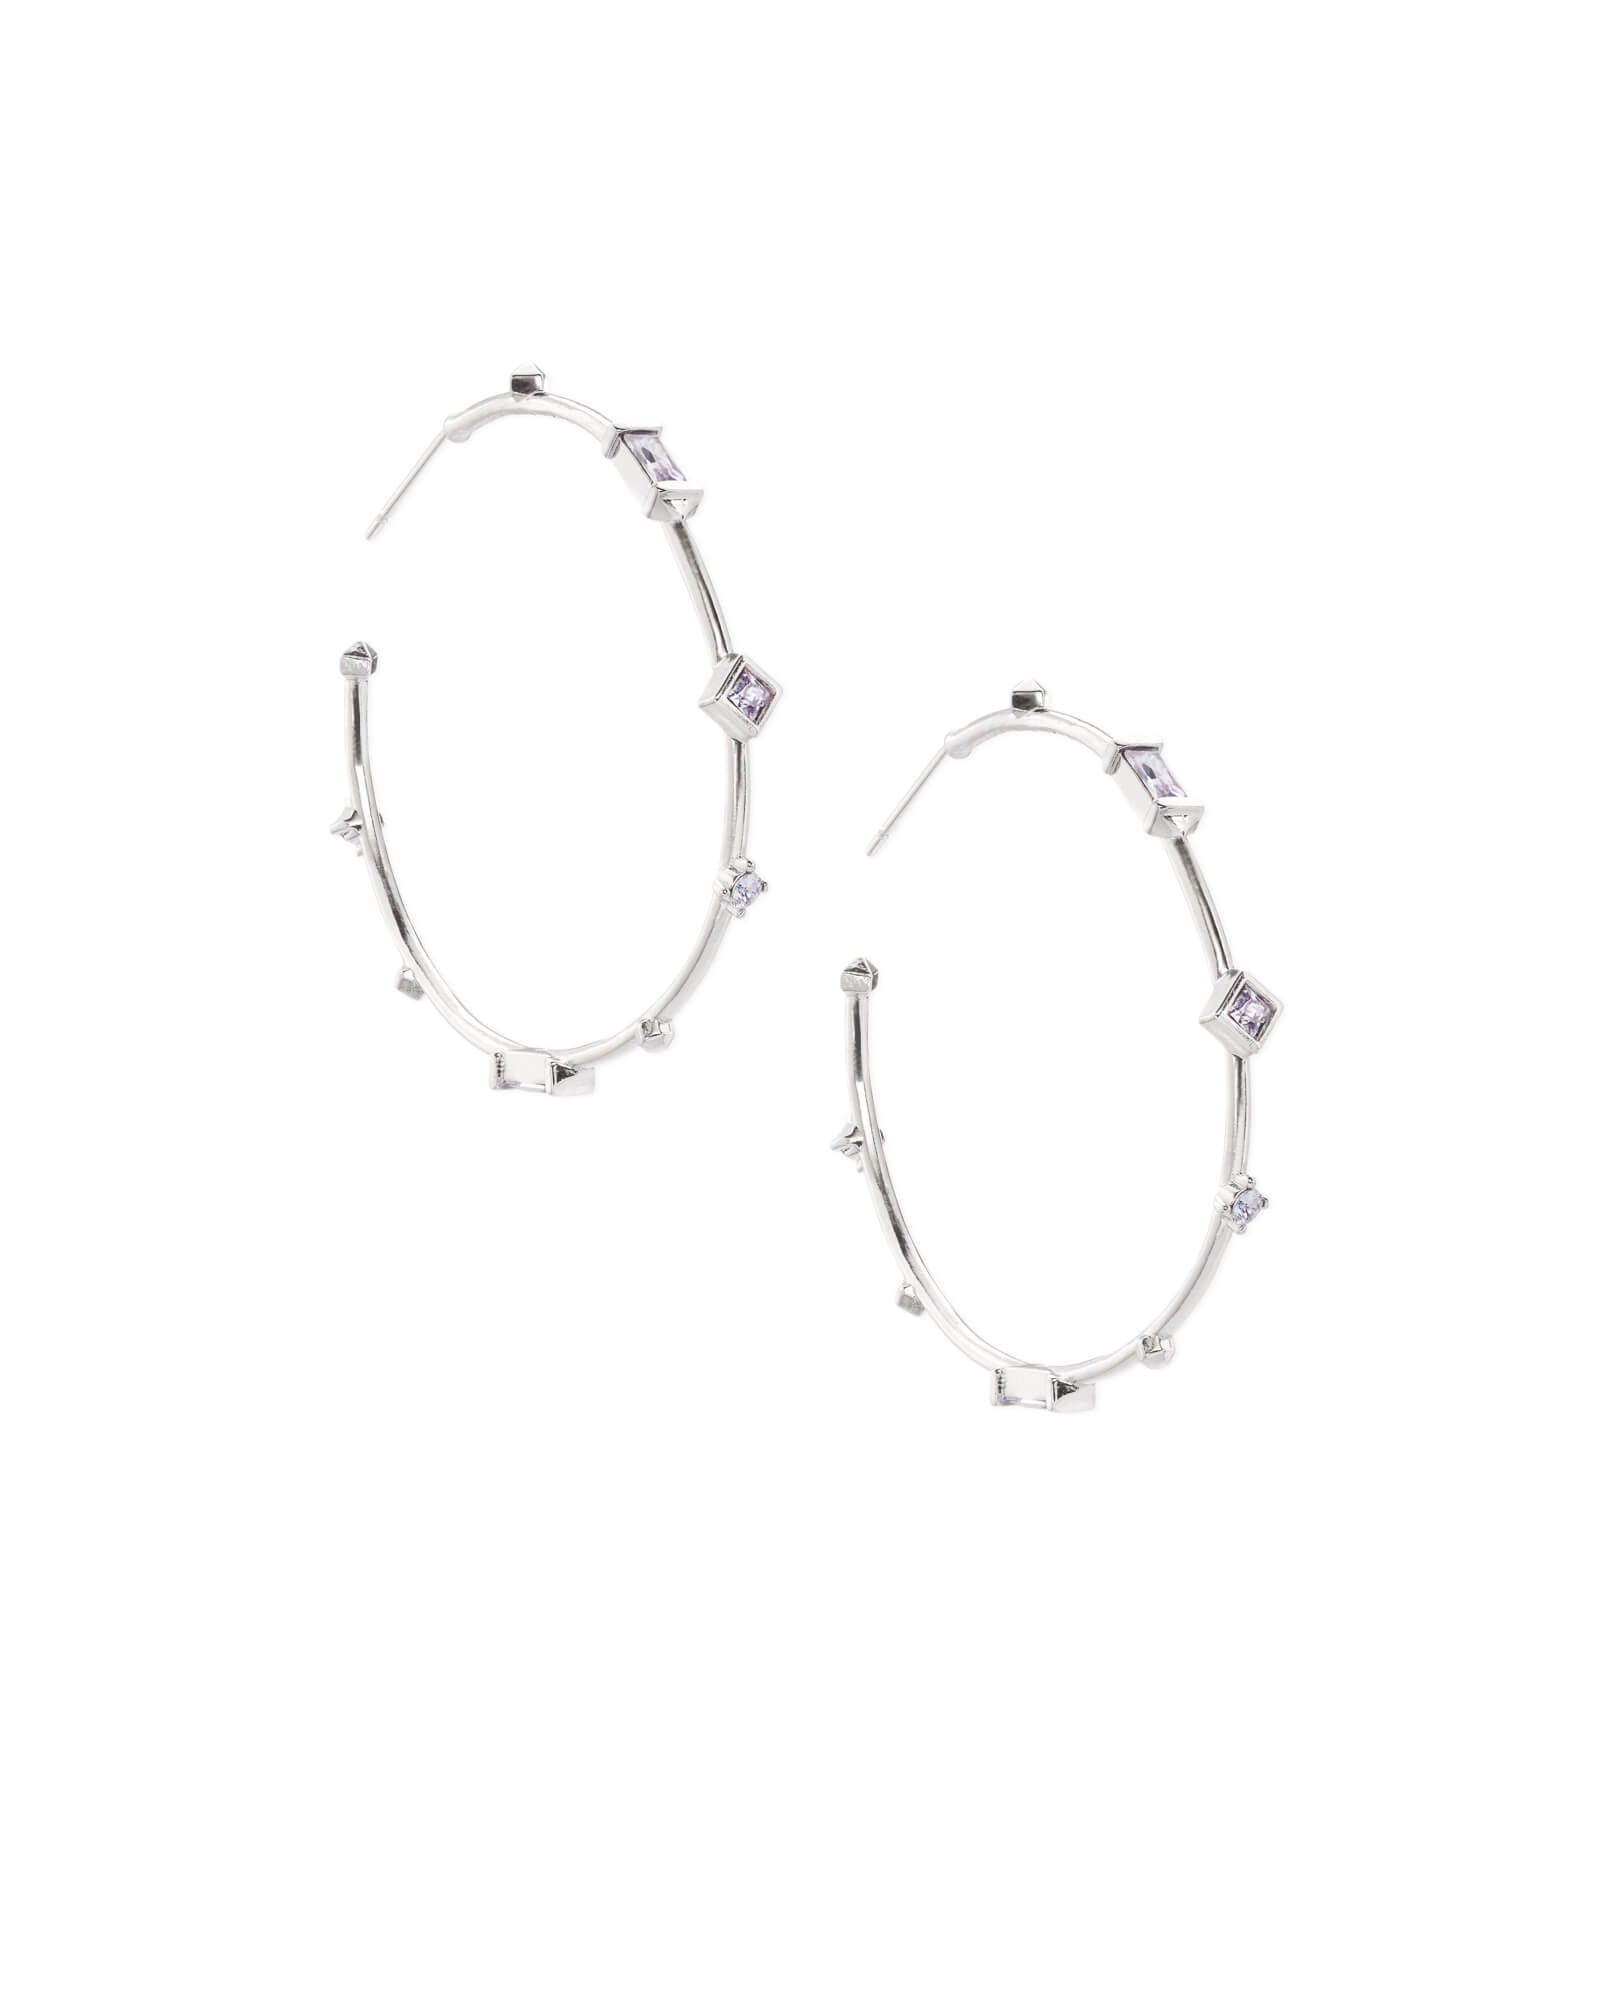 Rhoan Silver Hoop Earrings in Lilac Mix | Kendra Scott